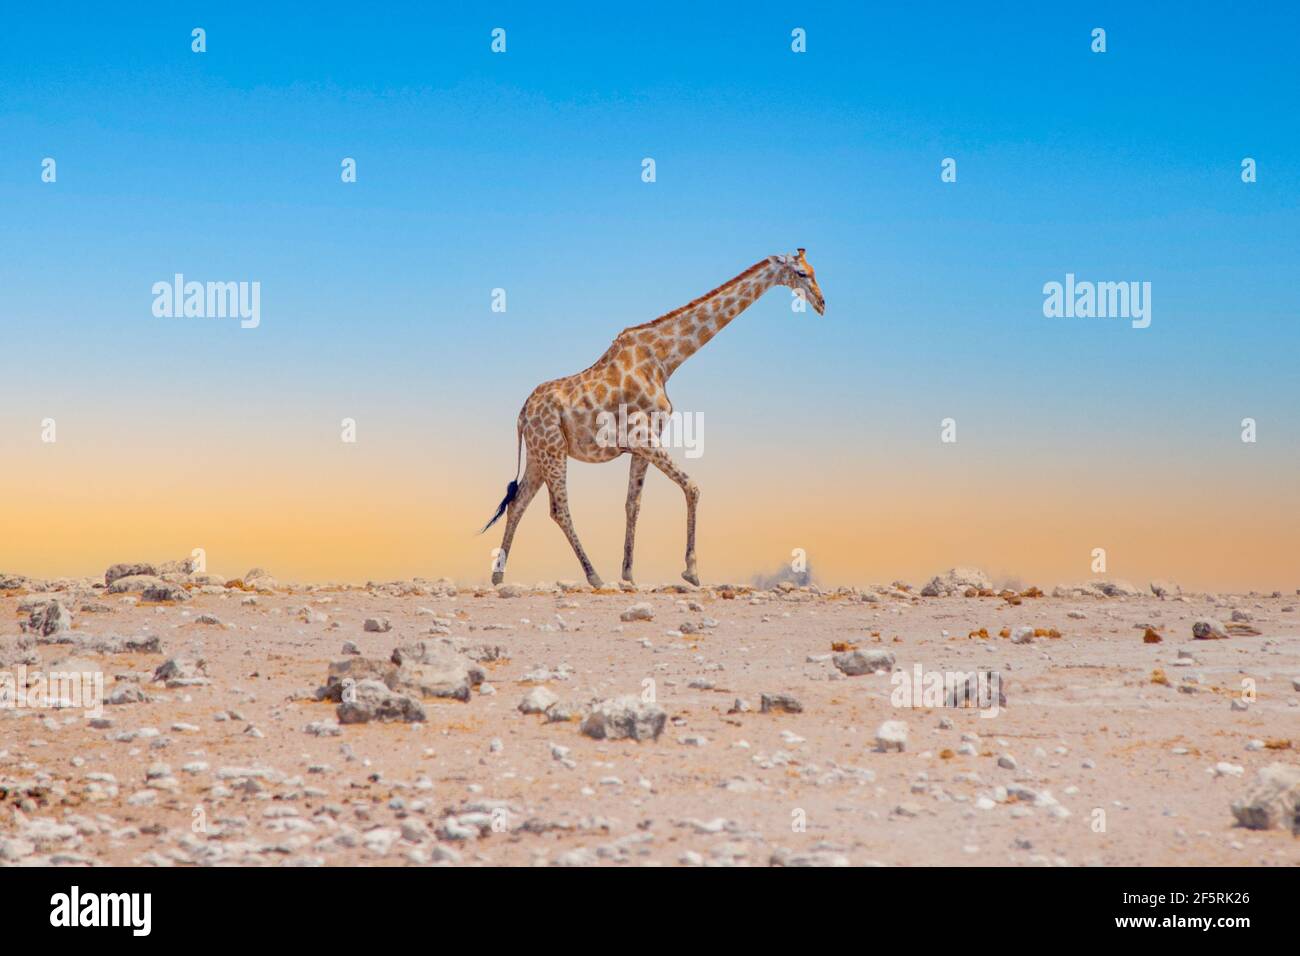 Tired giraffe walks on horizon Stock Photo